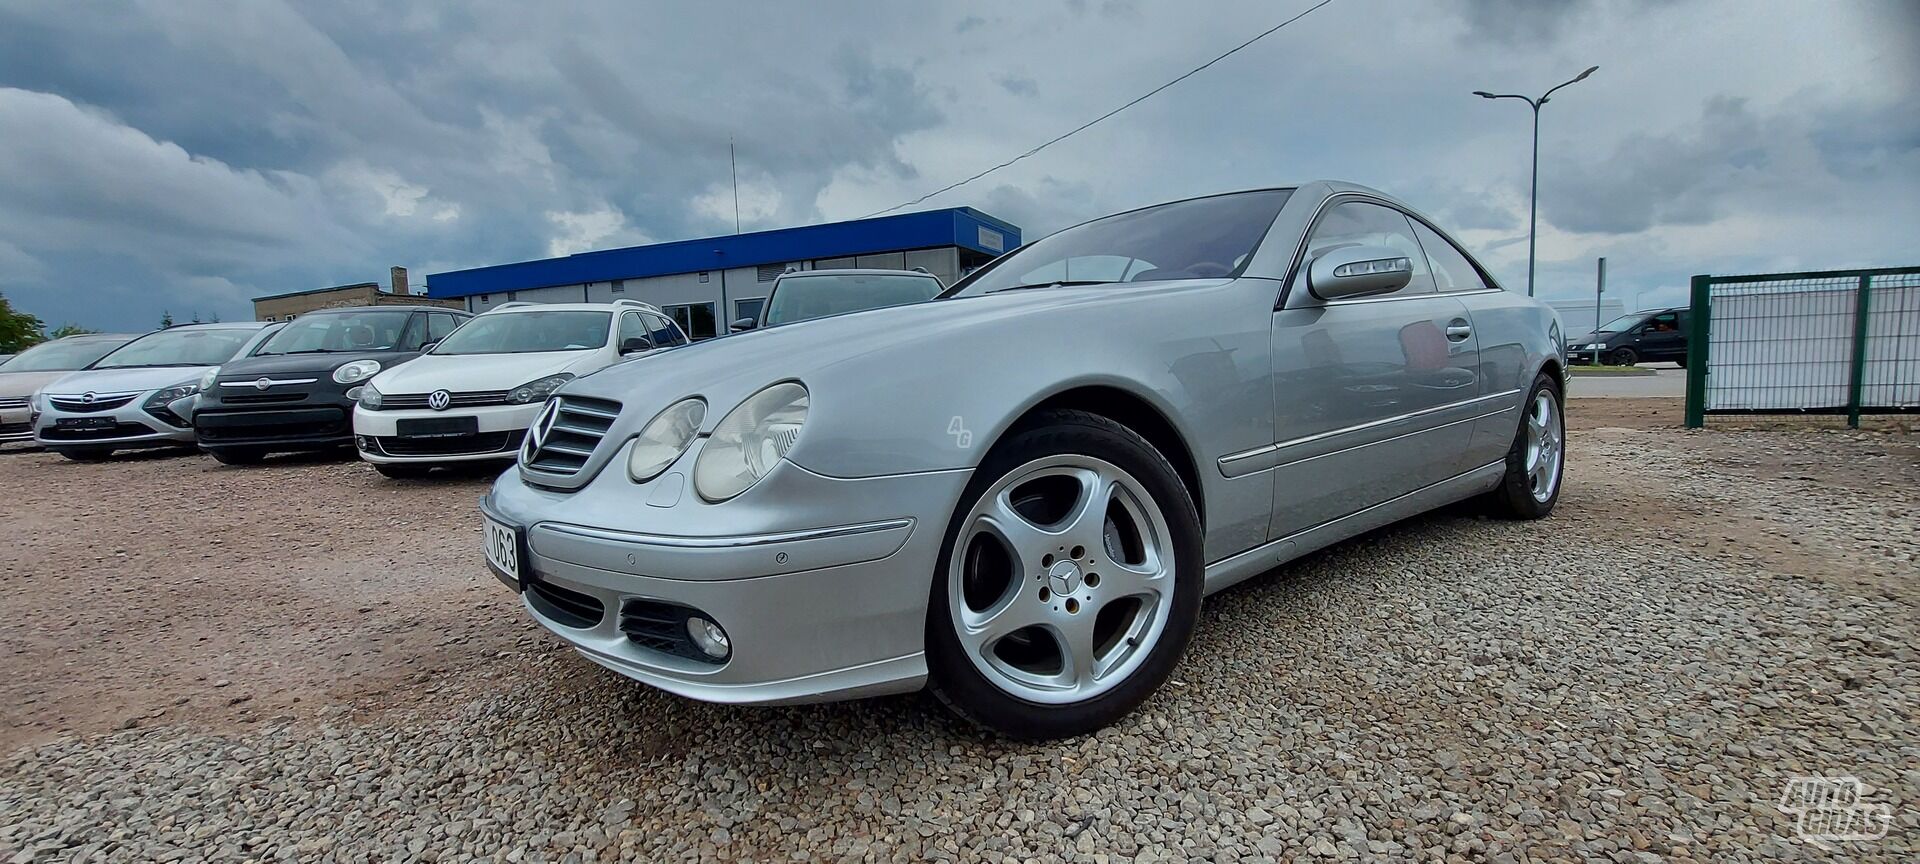 Mercedes-Benz CL 500 2005 г Купе